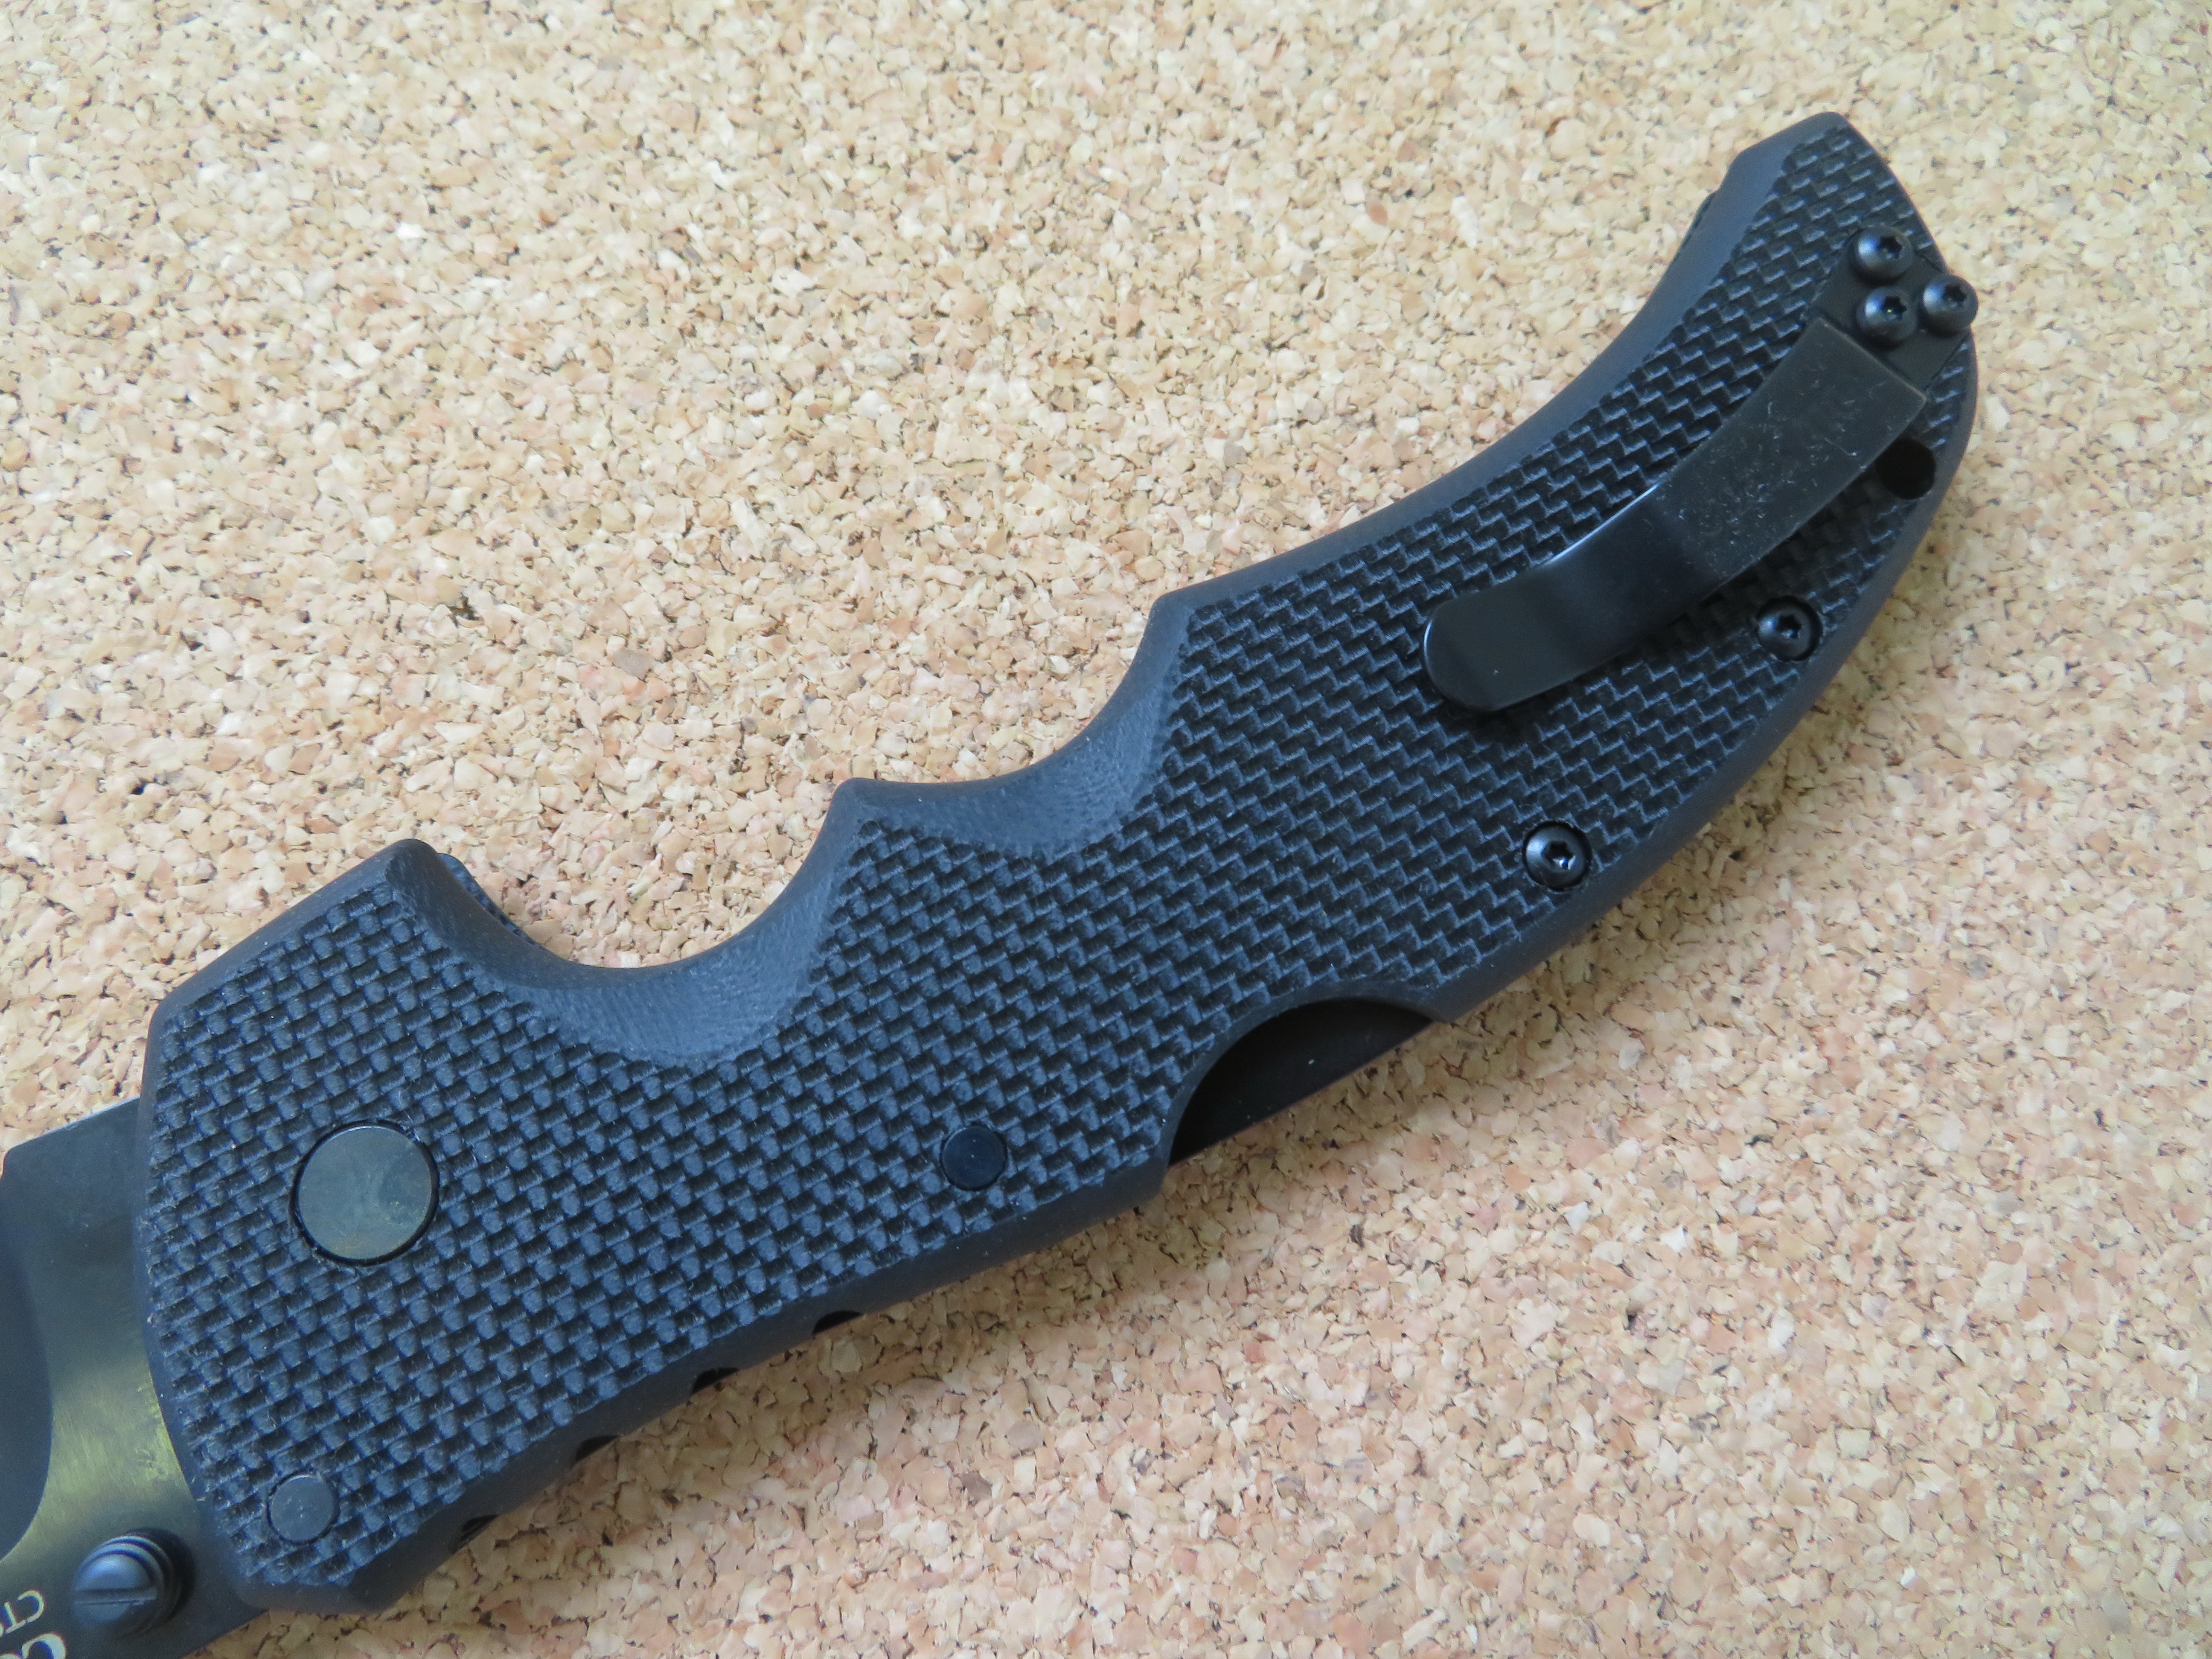 Detail rukojeti nože Recon 1 od Cold Steel vyrobené z materiálu G-10 i s kovovým klipsem.